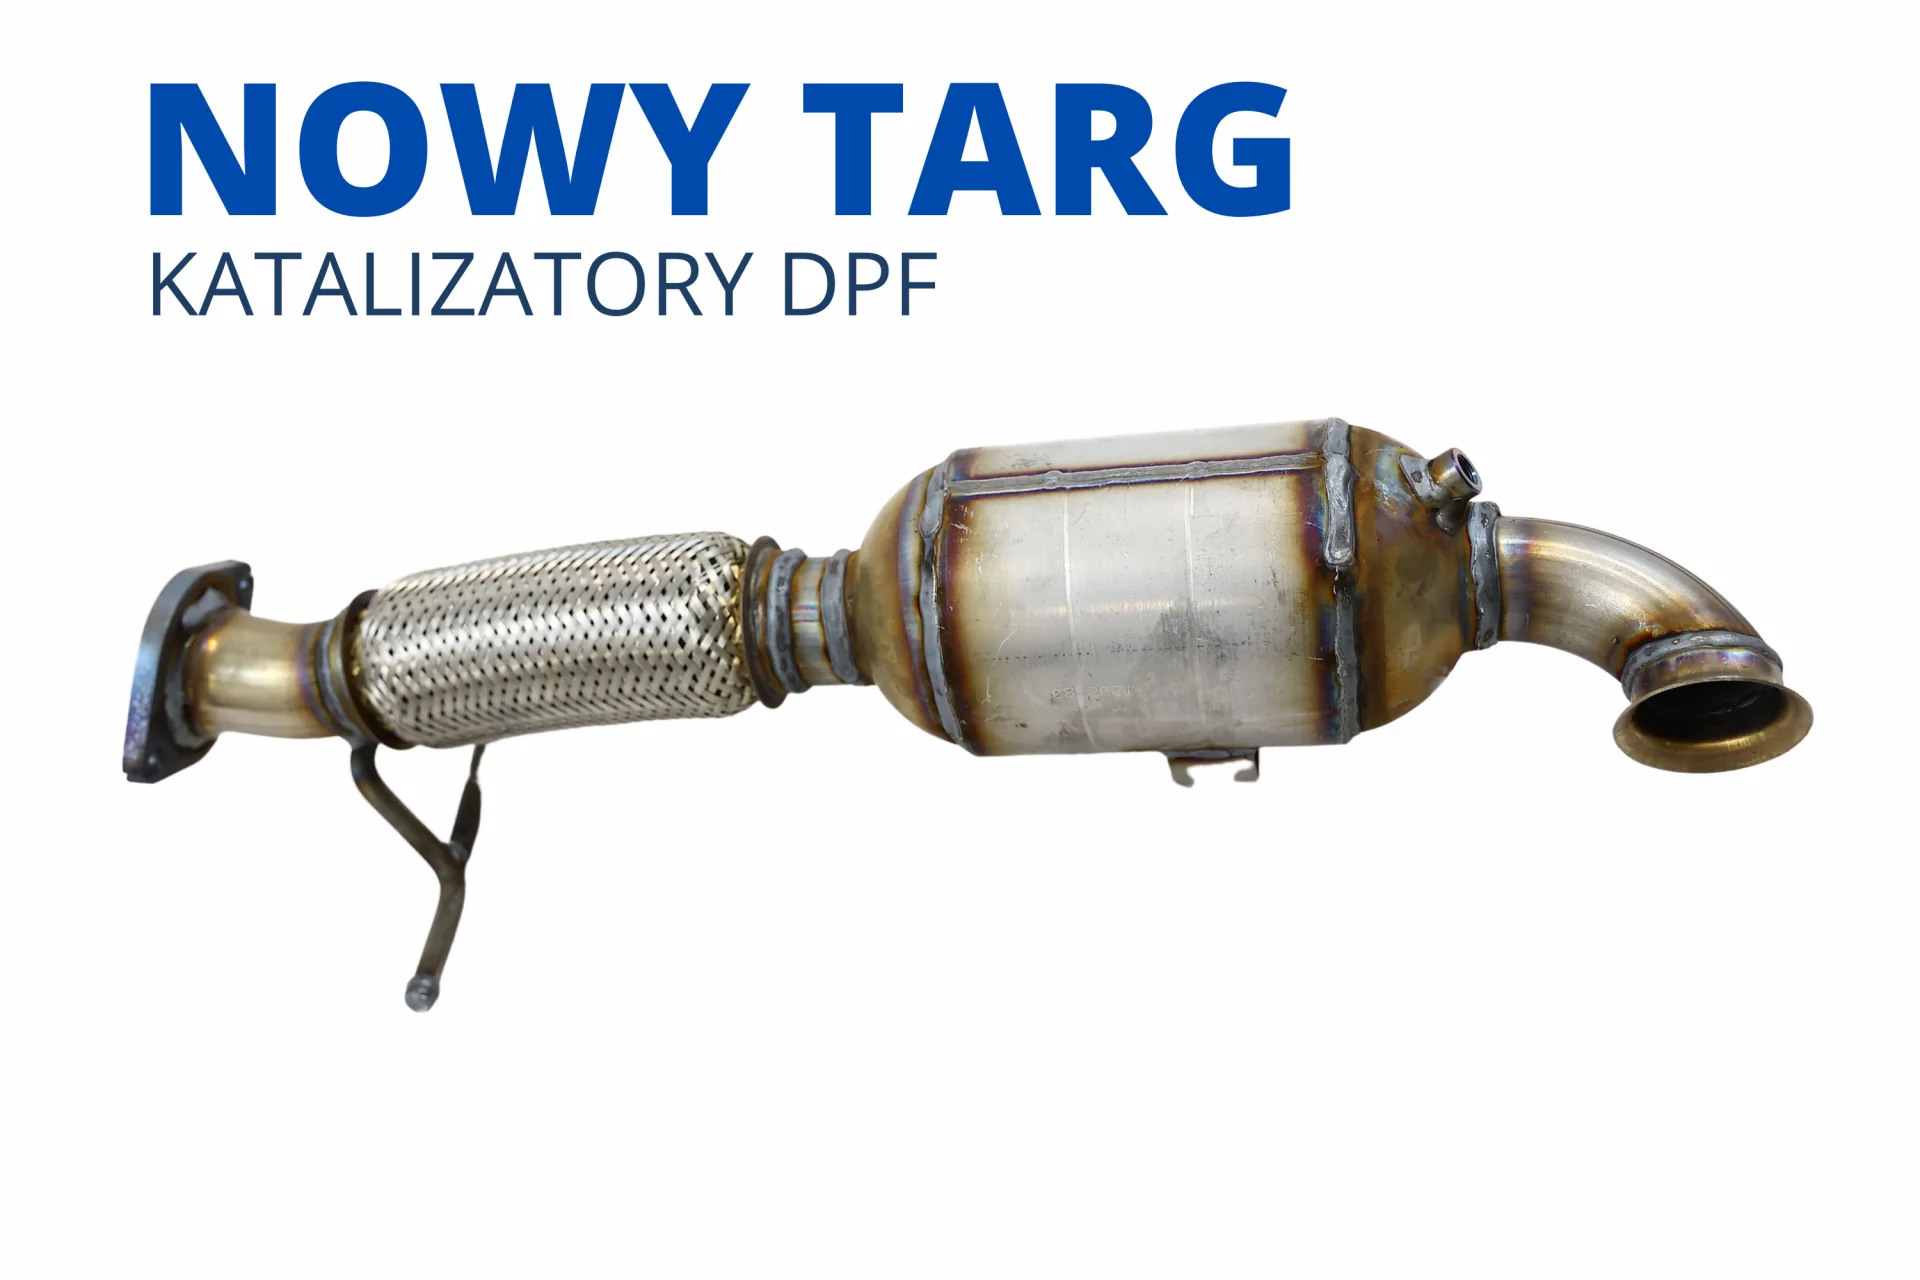 Katalizatory DPF FAP SCR Nowy Targ nowy cena